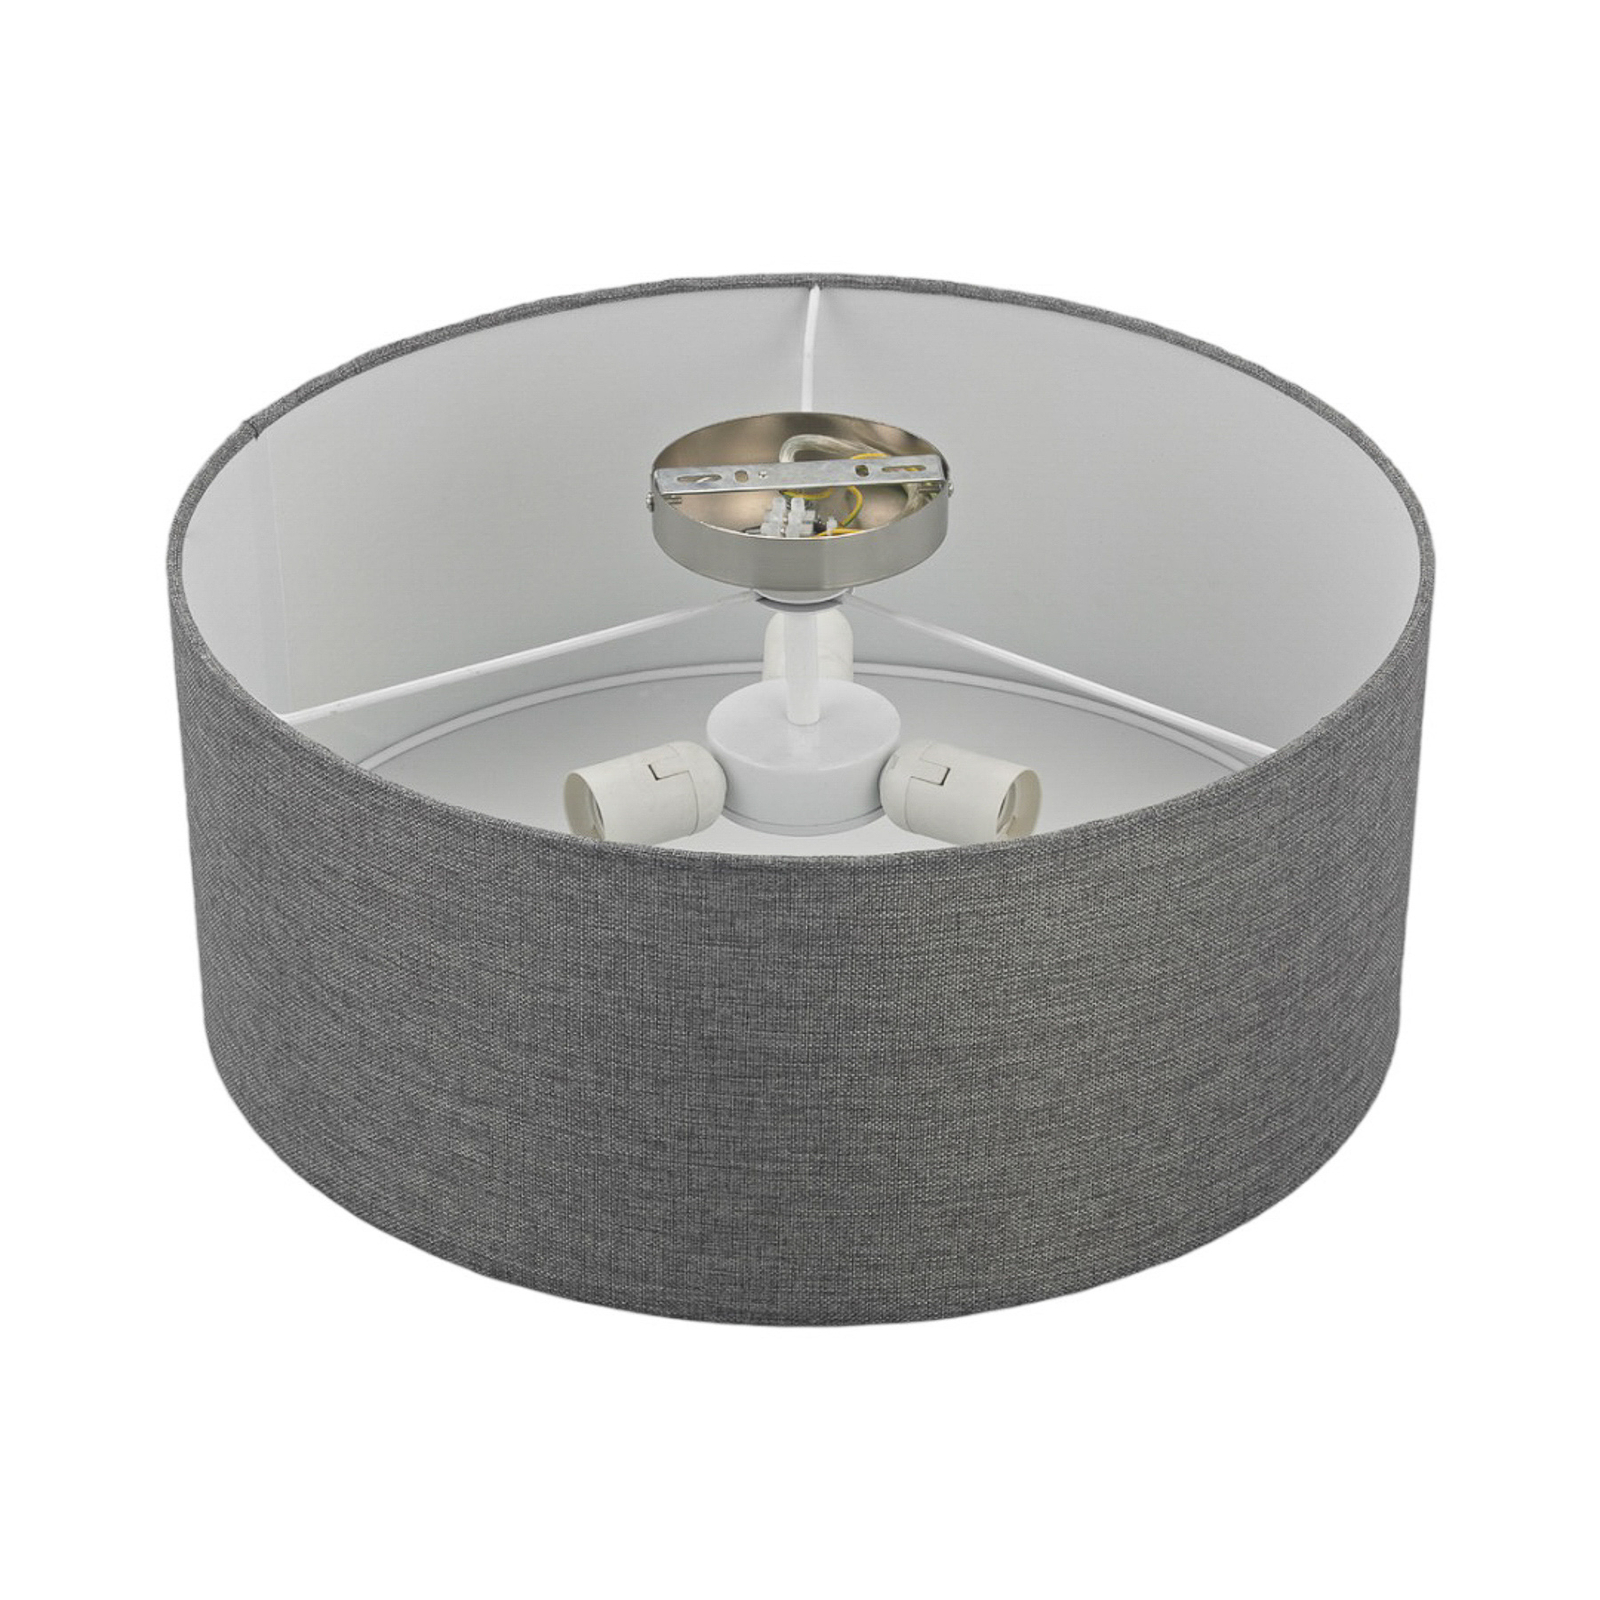 Sølvgrå stofftaklampe Pitta med linutseende